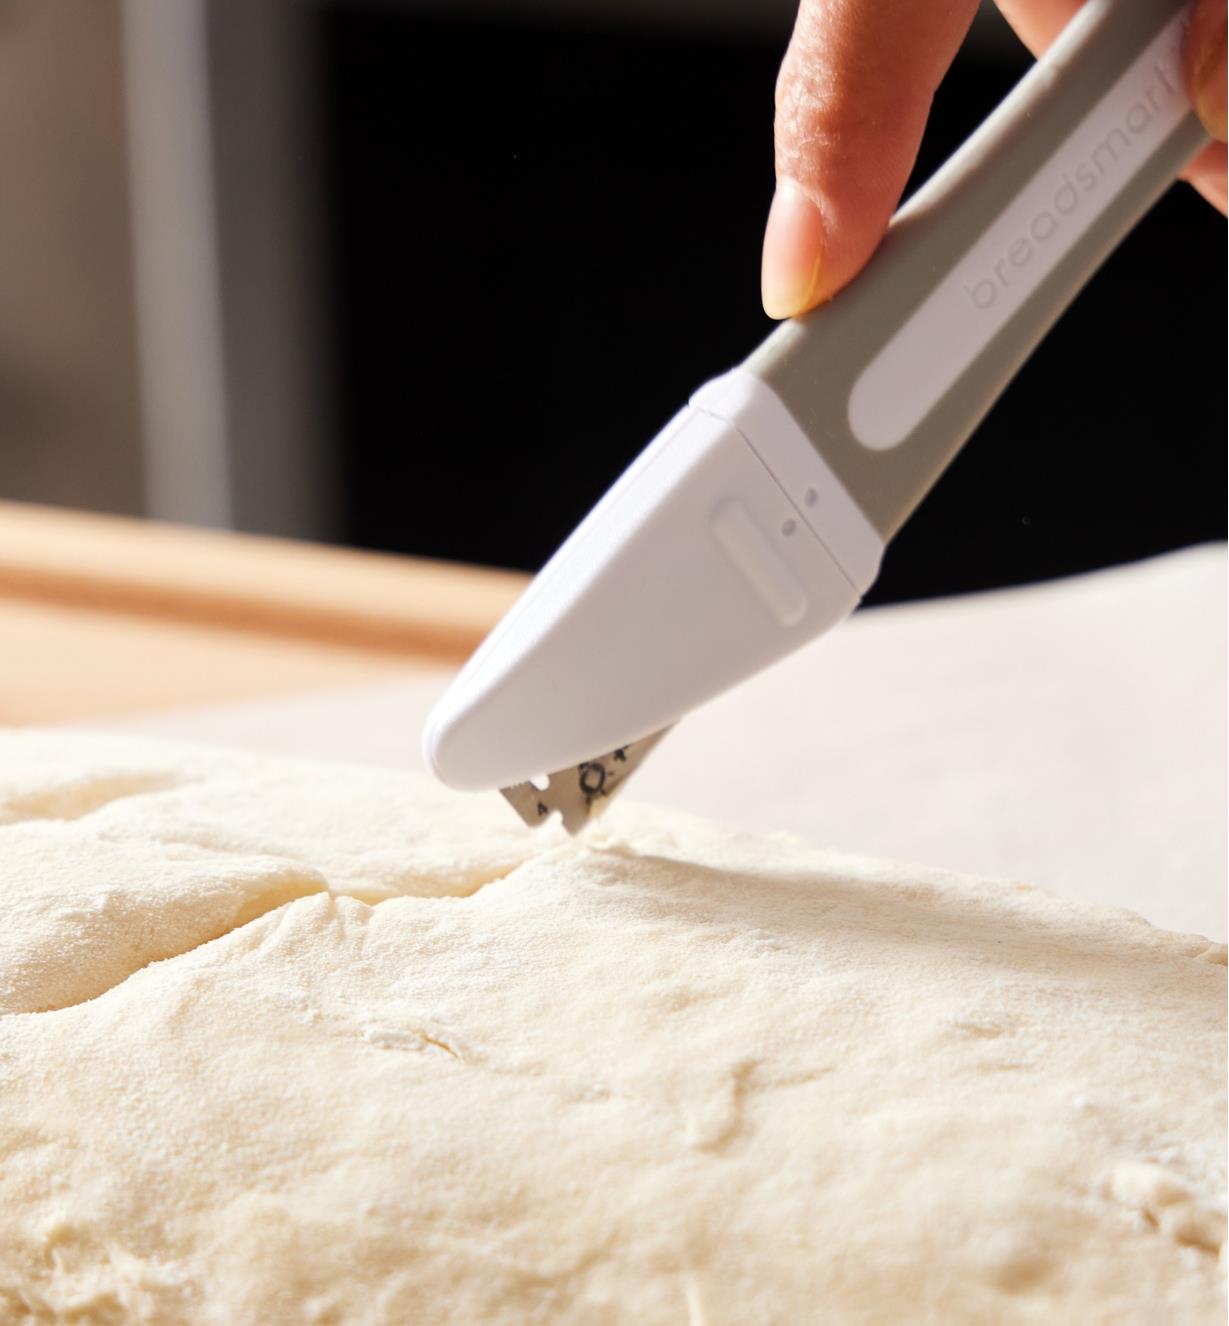 Personne utilisant une lame du porte-lame droit pour inciser une pâte à pain levée